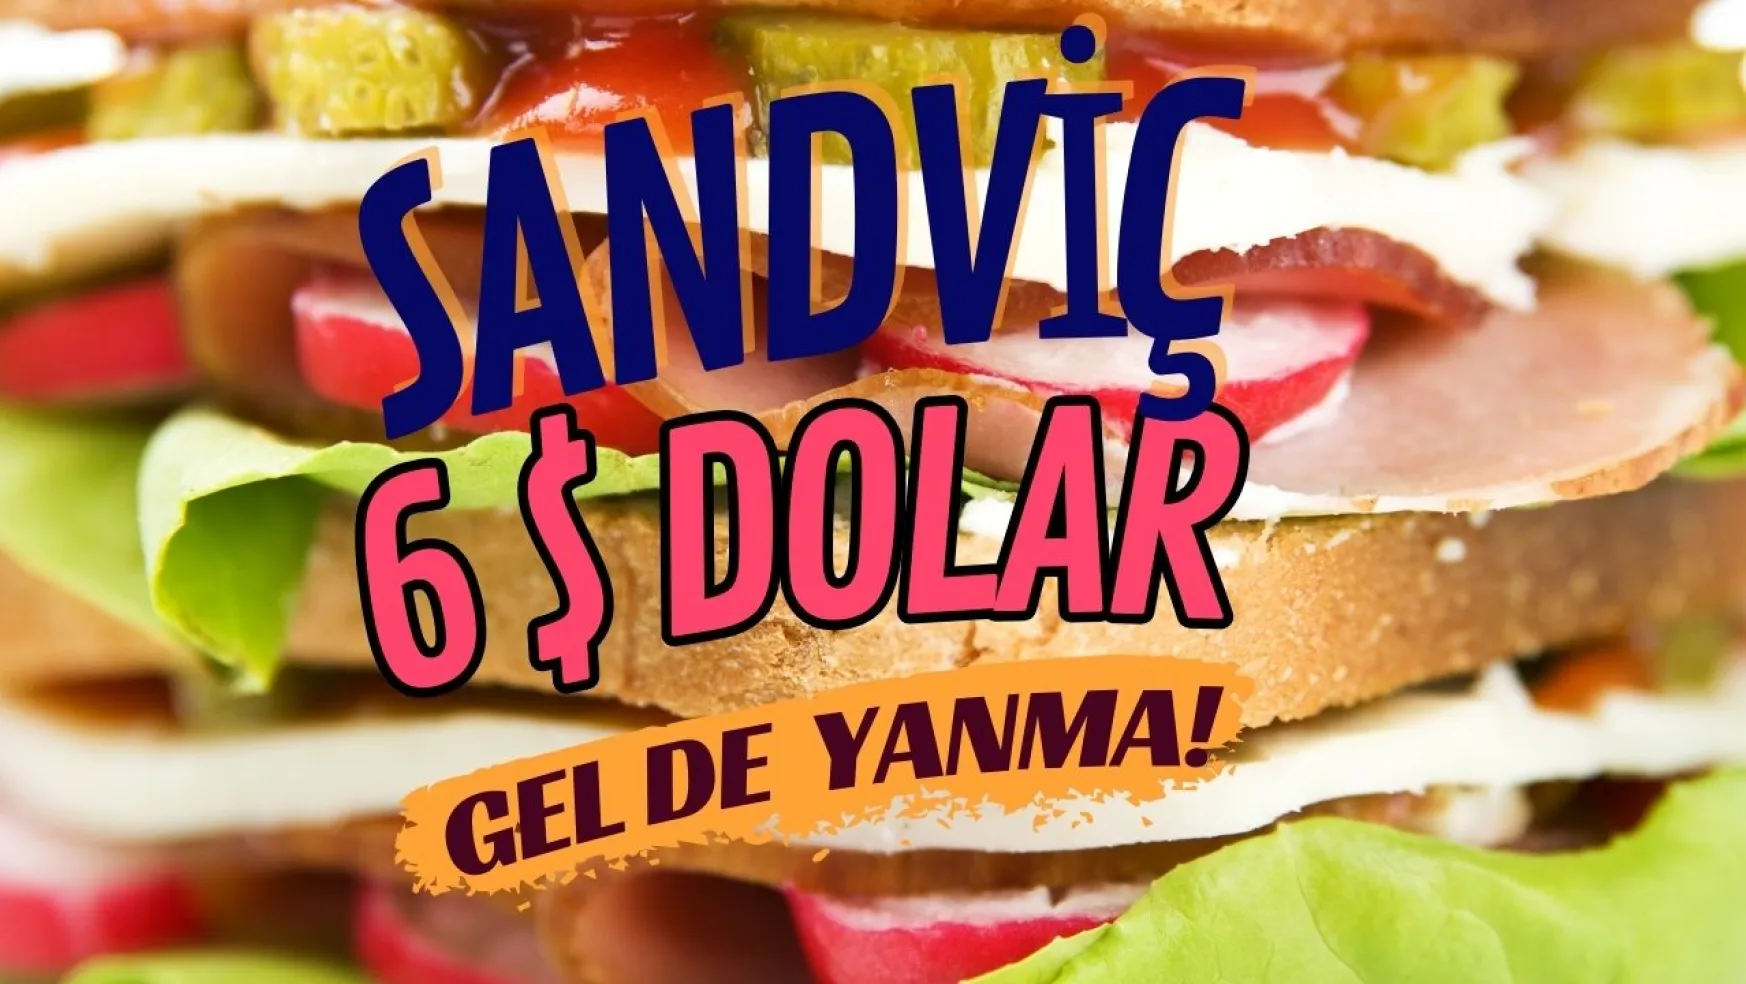 Sandviç Deyip Geçme 6 $ Oldu